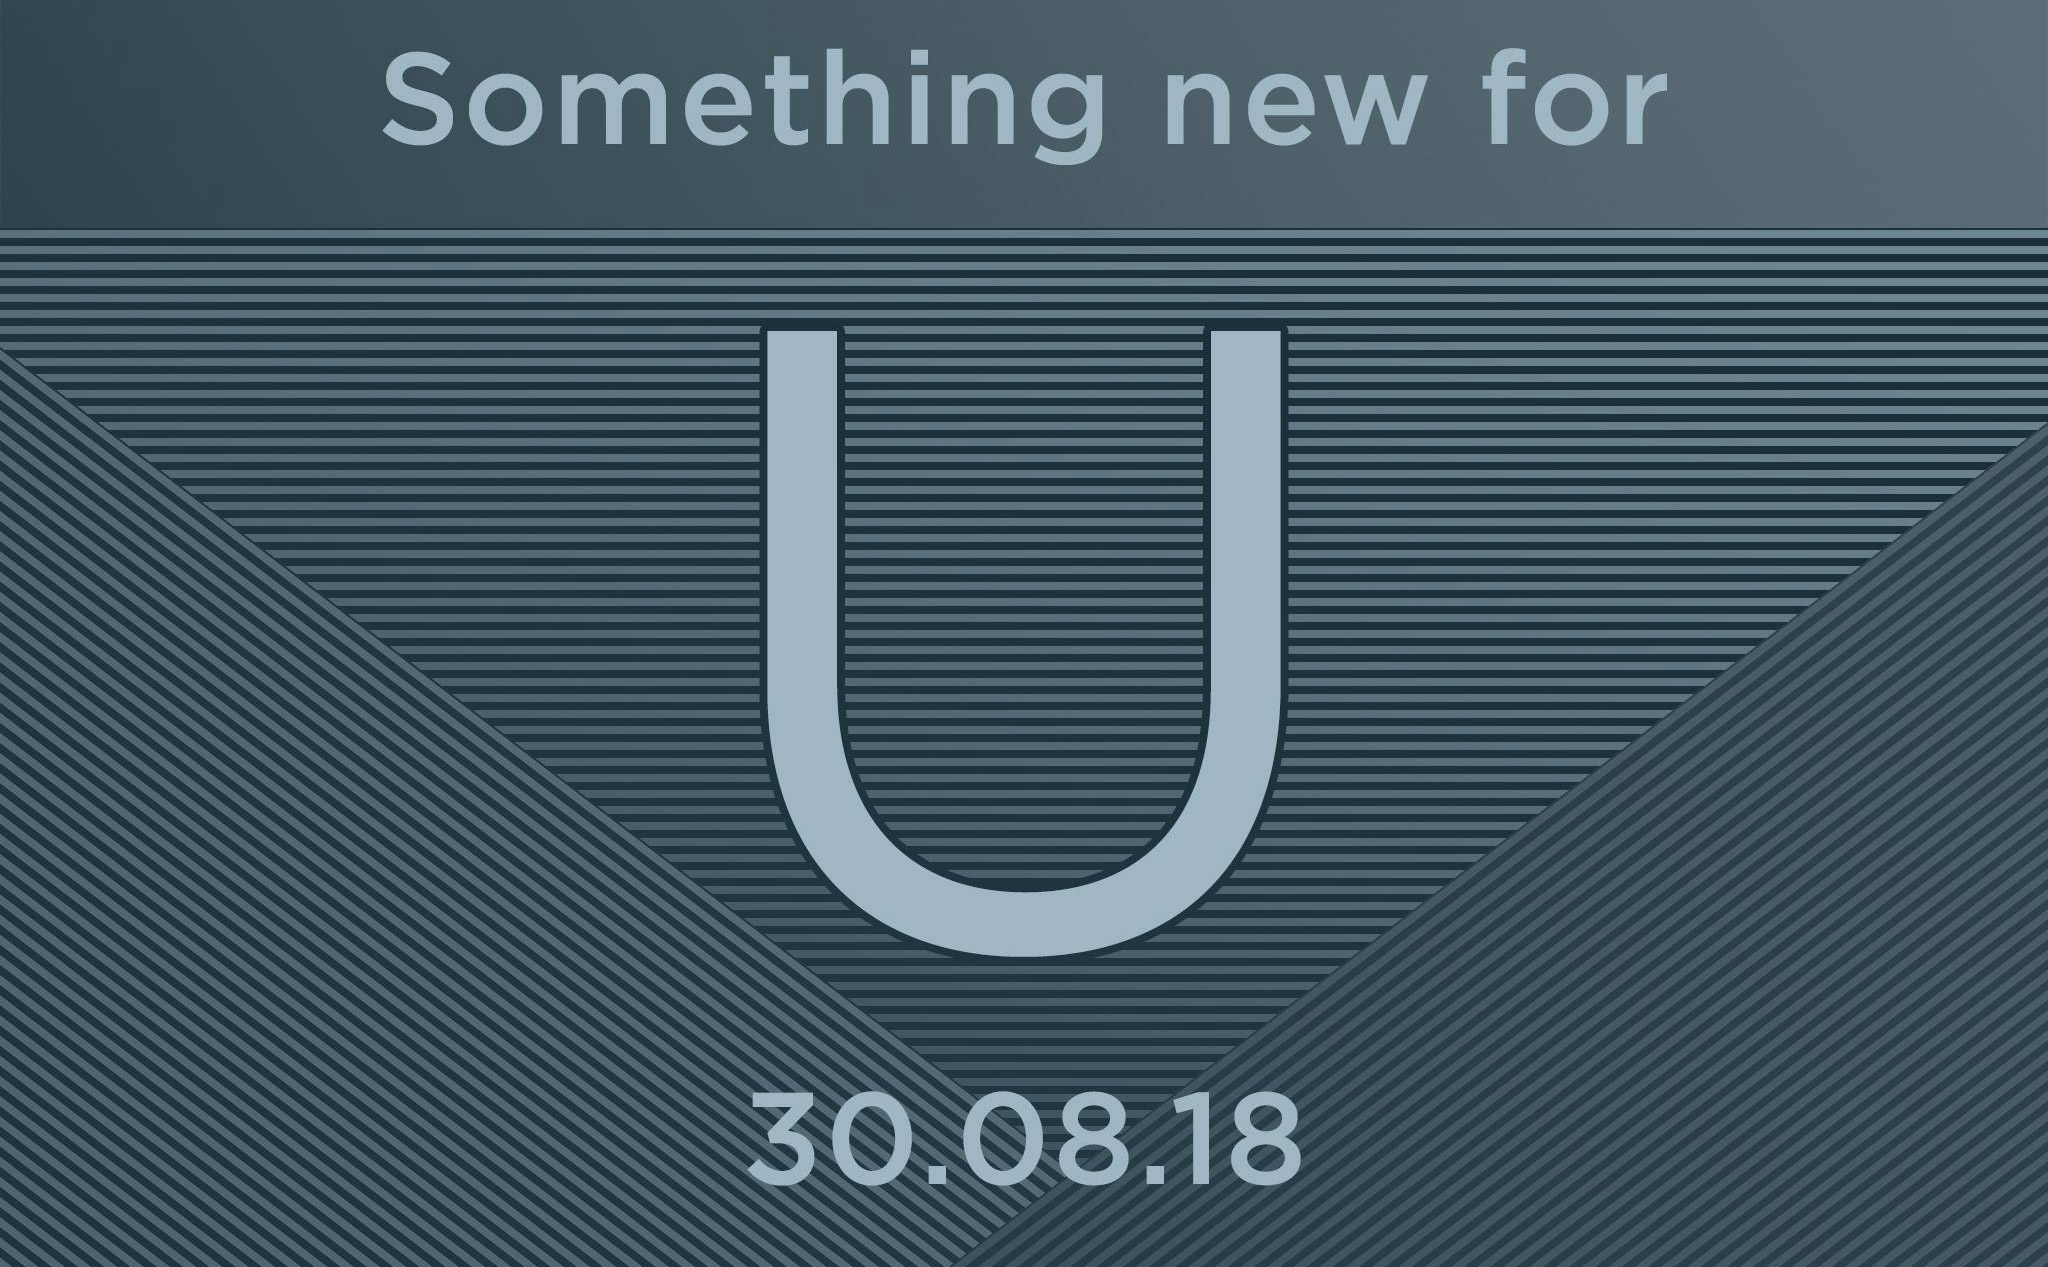 HTC sẽ ra mắt sản phẩm U mới vào ngày 30/8